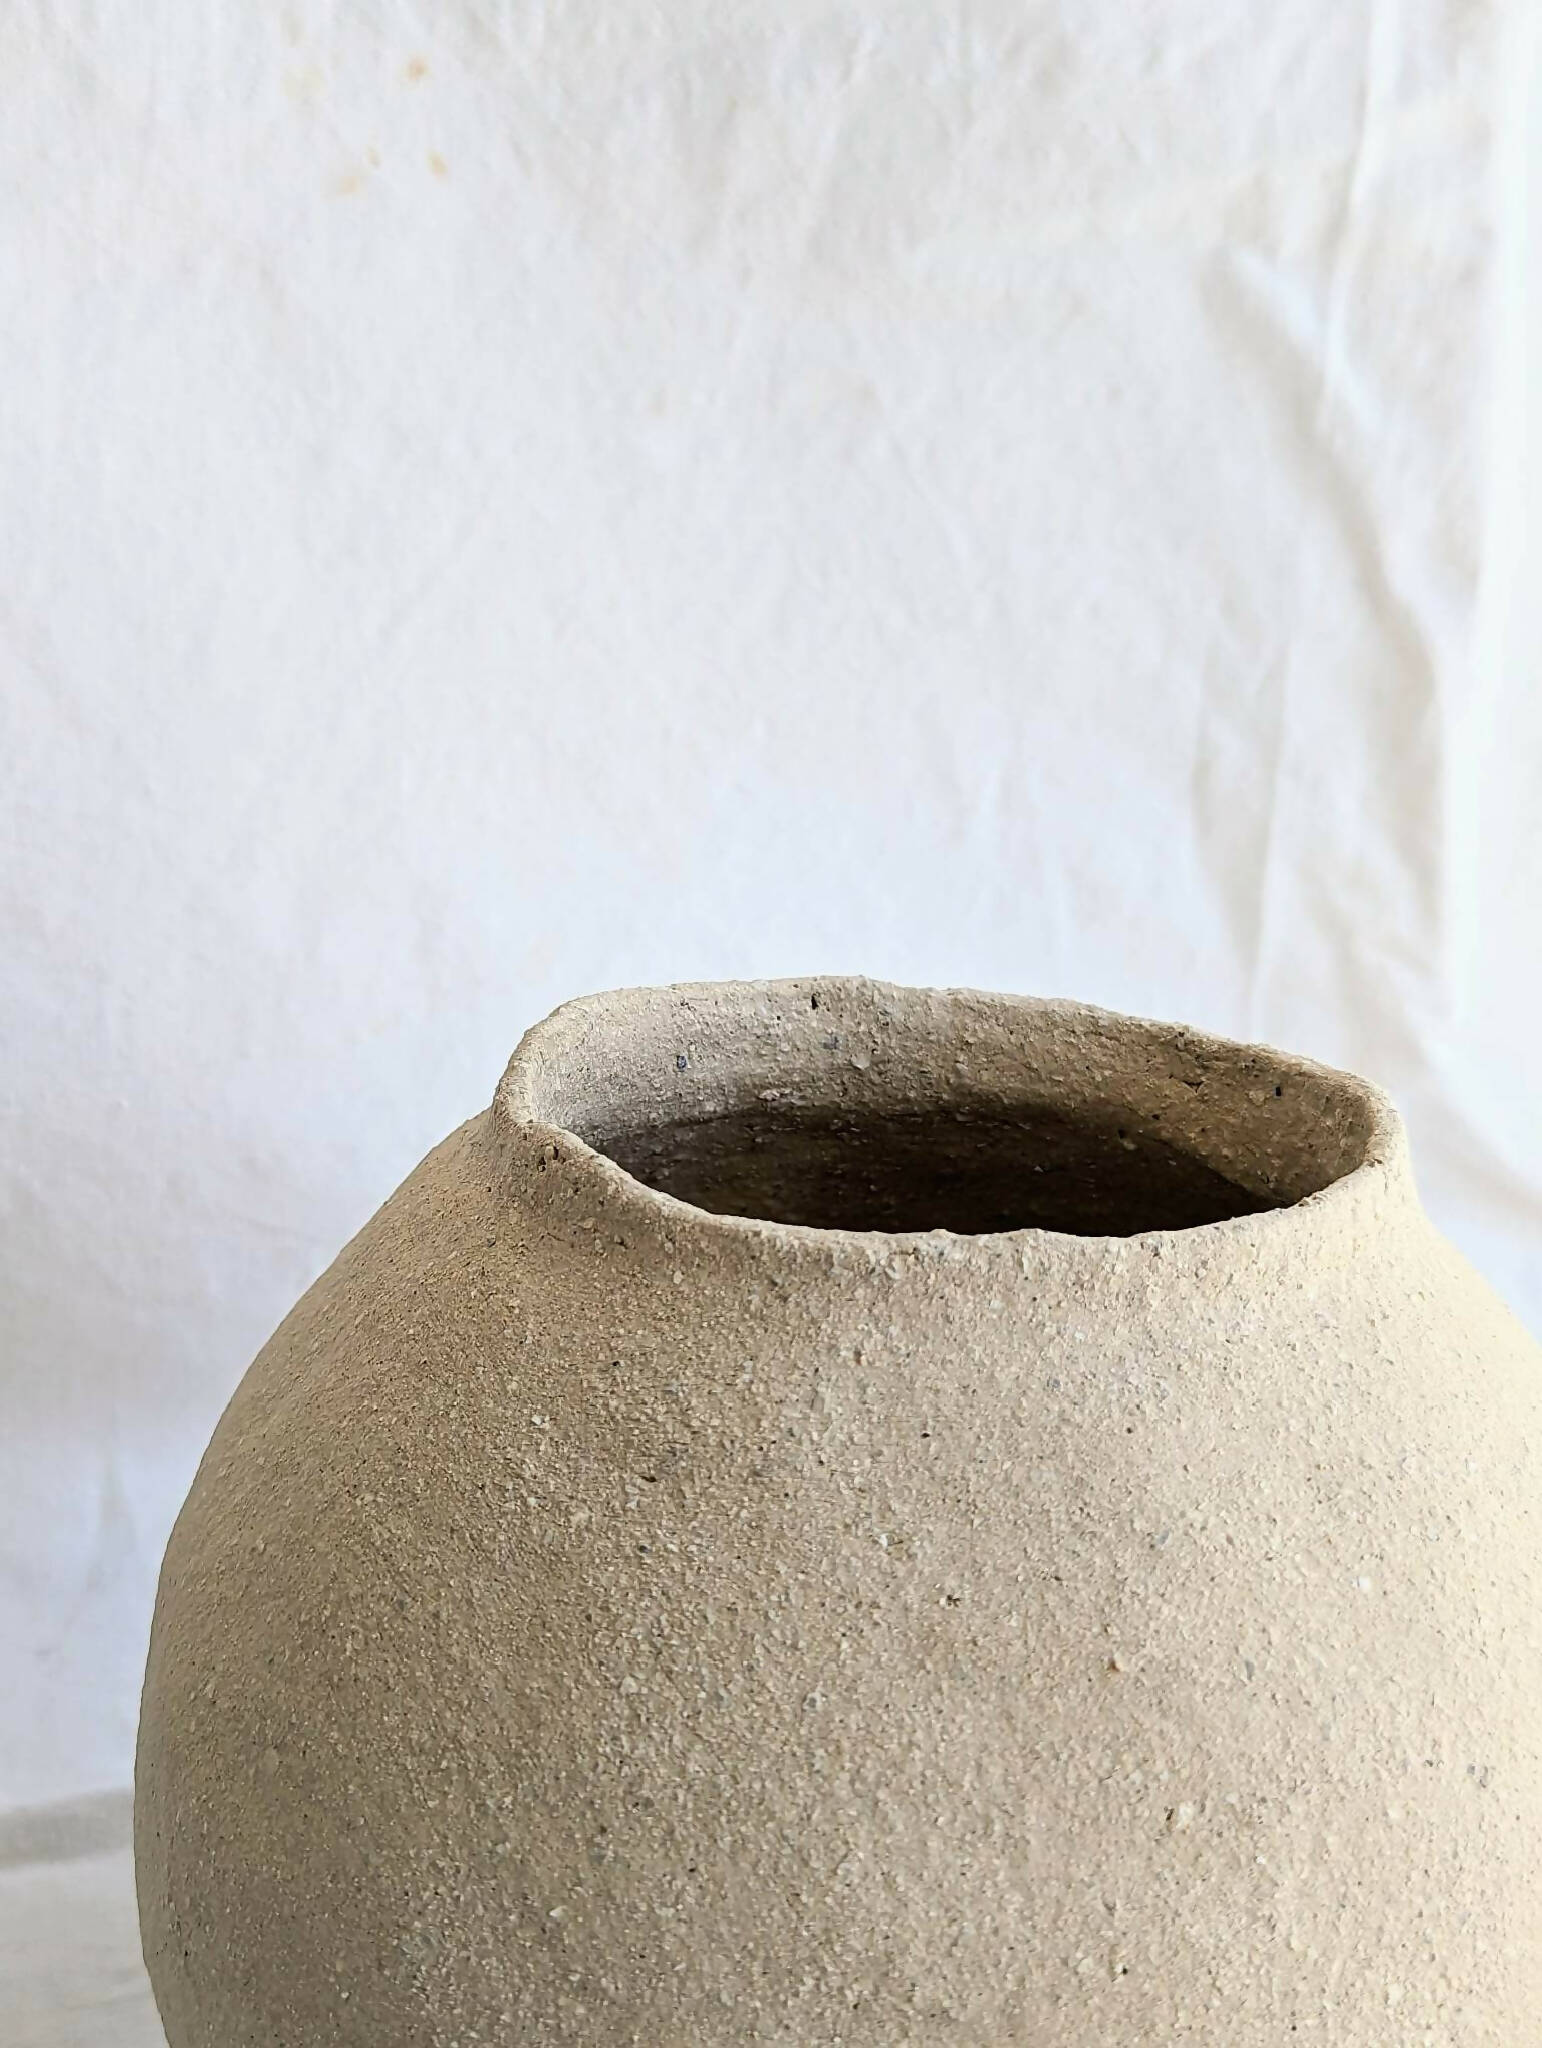 Vase Areia13 ceramique artisanale fait main artisanat francais